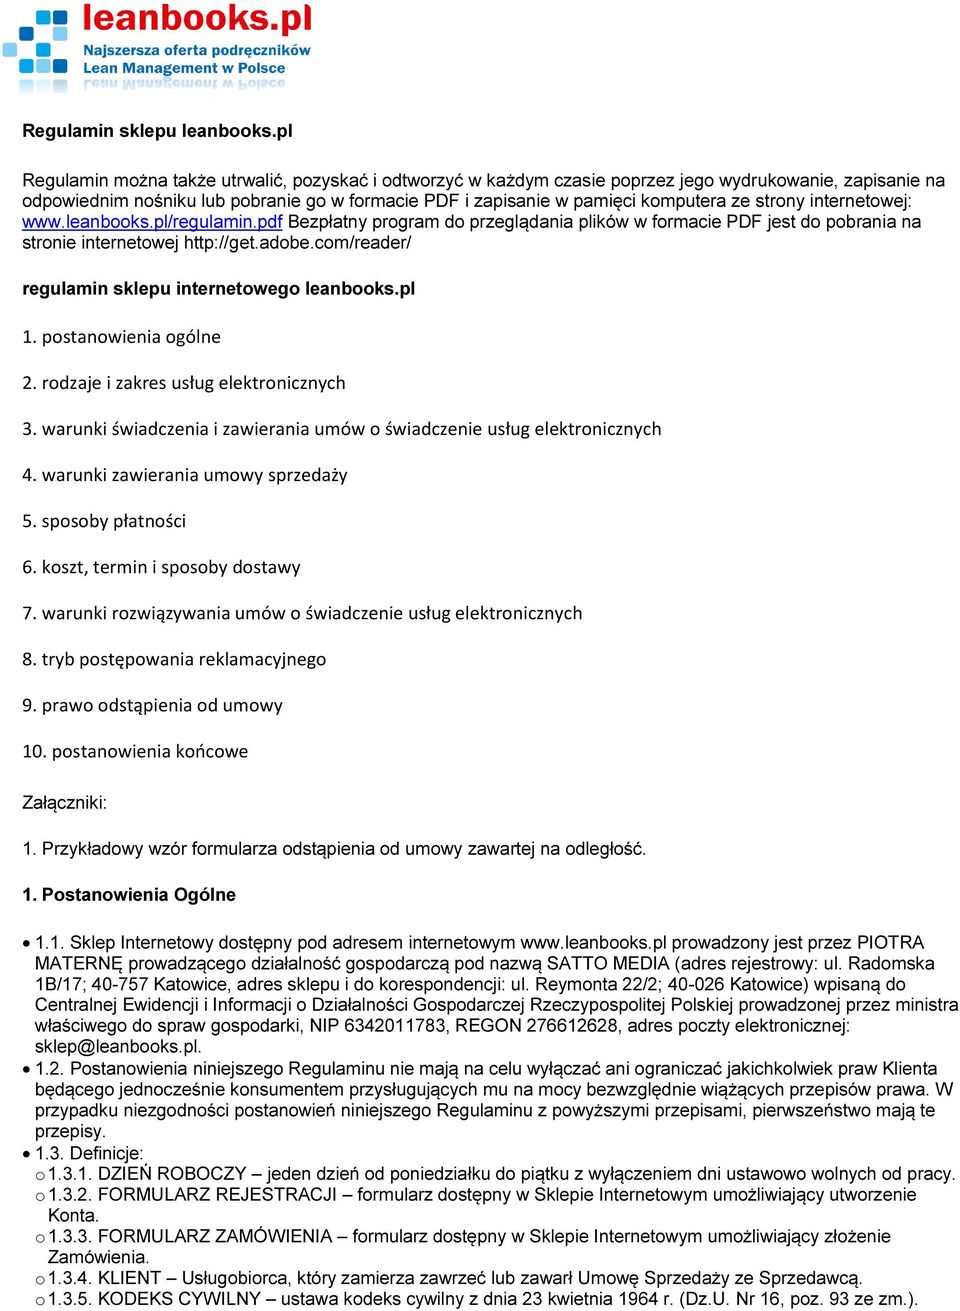 strony internetowej: www.leanbooks.pl/regulamin.pdf Bezpłatny program do przeglądania plików w formacie PDF jest do pobrania na stronie internetowej http://get.adobe.